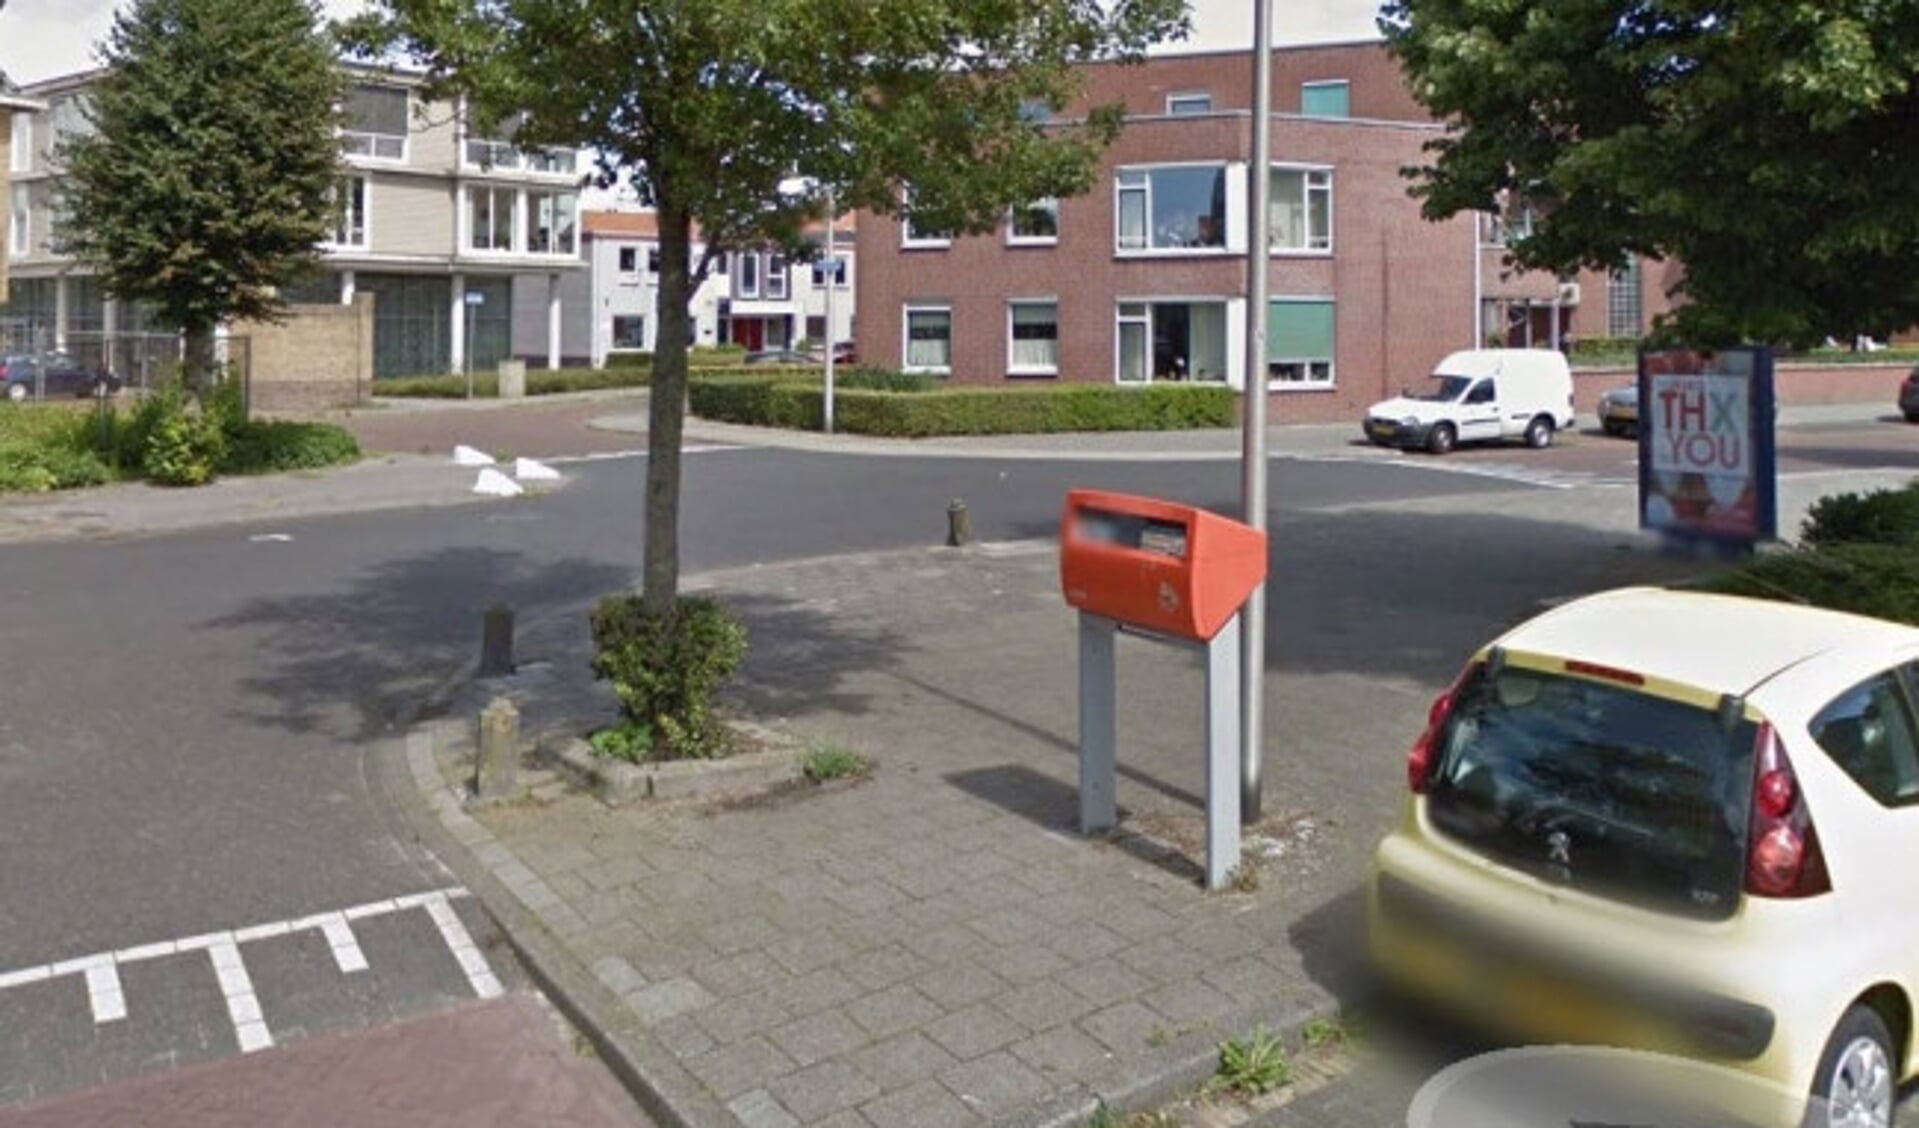  De brievenbus op de kruisin van de Noordweg met de Julianastraat. Bron: Google Maps.